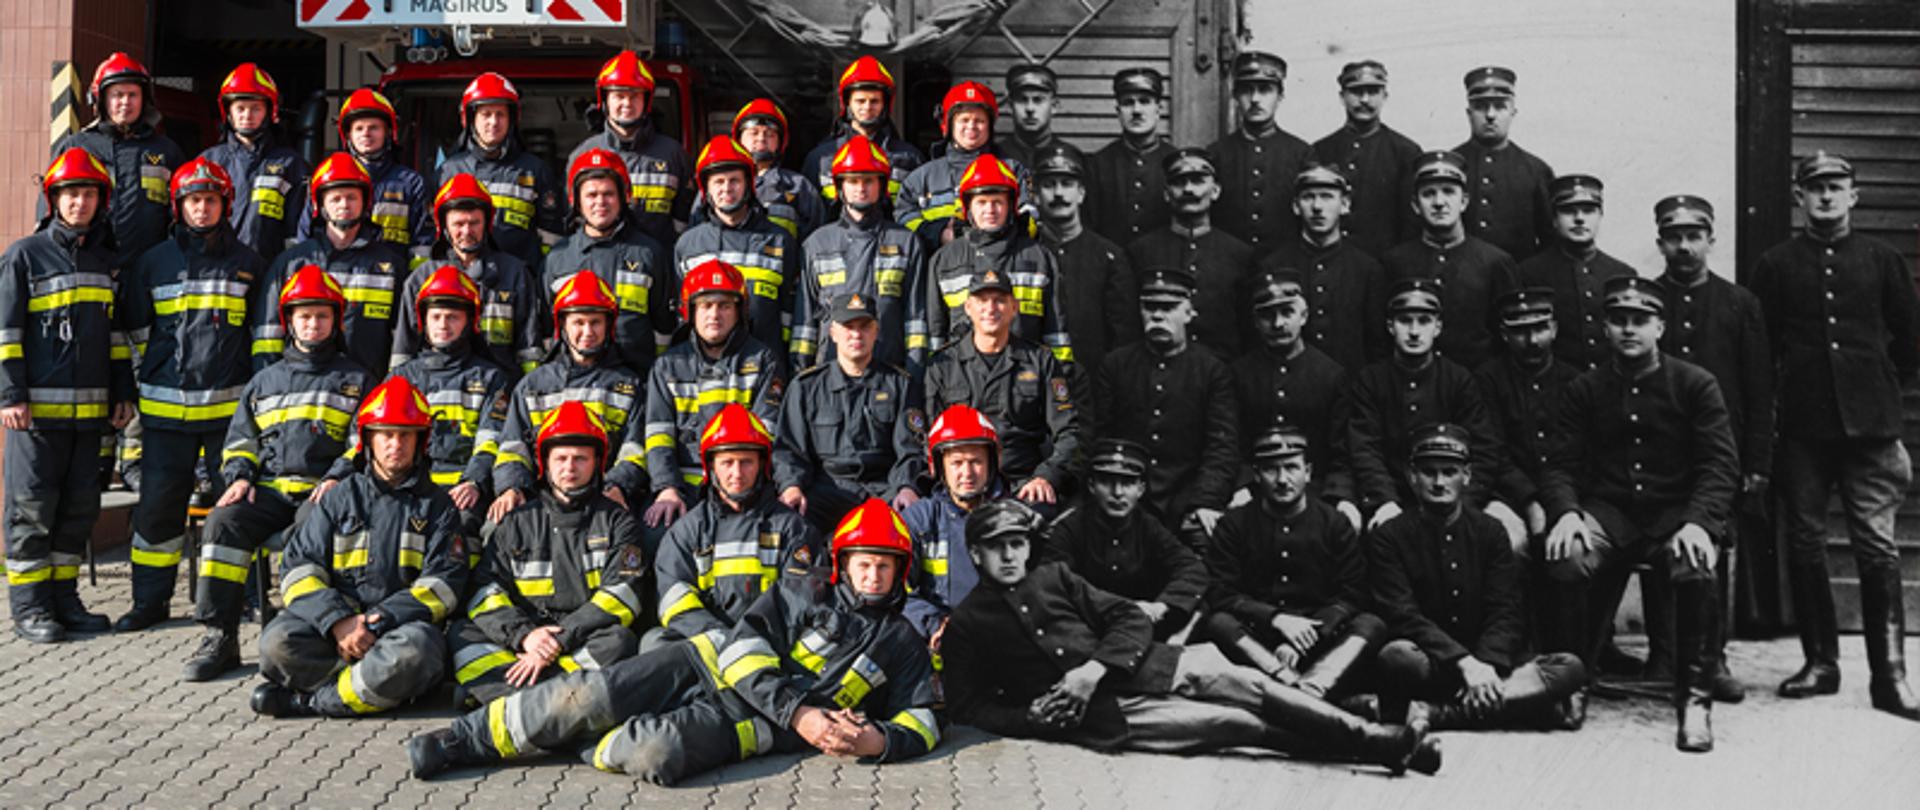 Po lewej stronie zdjęcia strażacy z jednostki nr 3 w Warszawie z 2017 roku. Po prawej stronie zdjęcia strażacy z lat 20-tych ubiegłego wieku. 